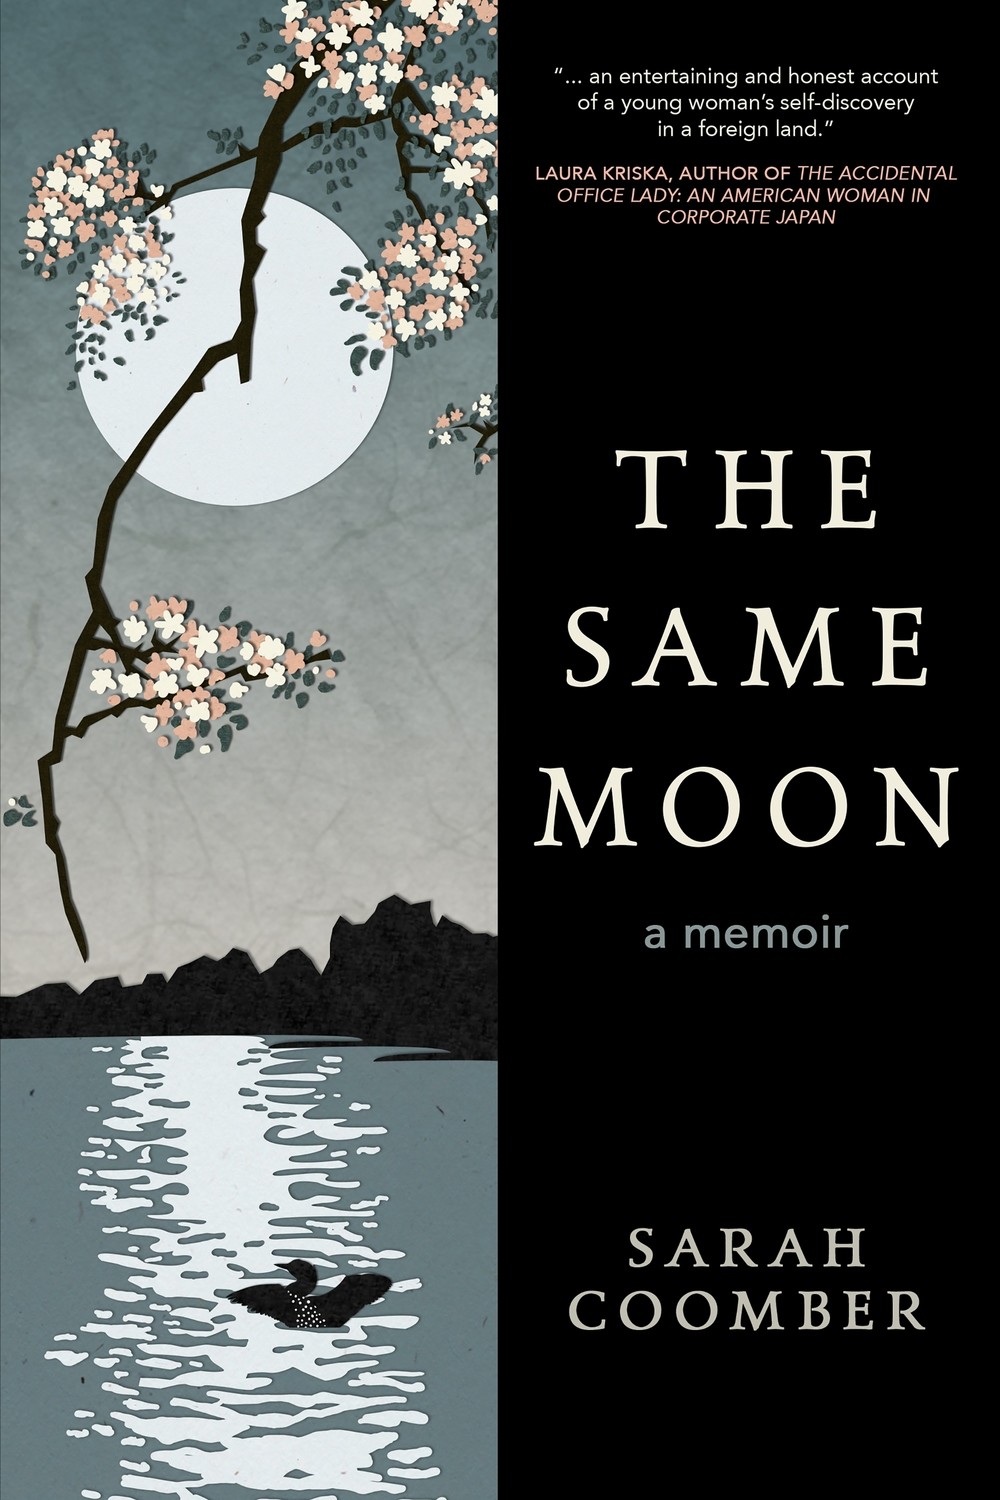 The Same Moon - a memoir